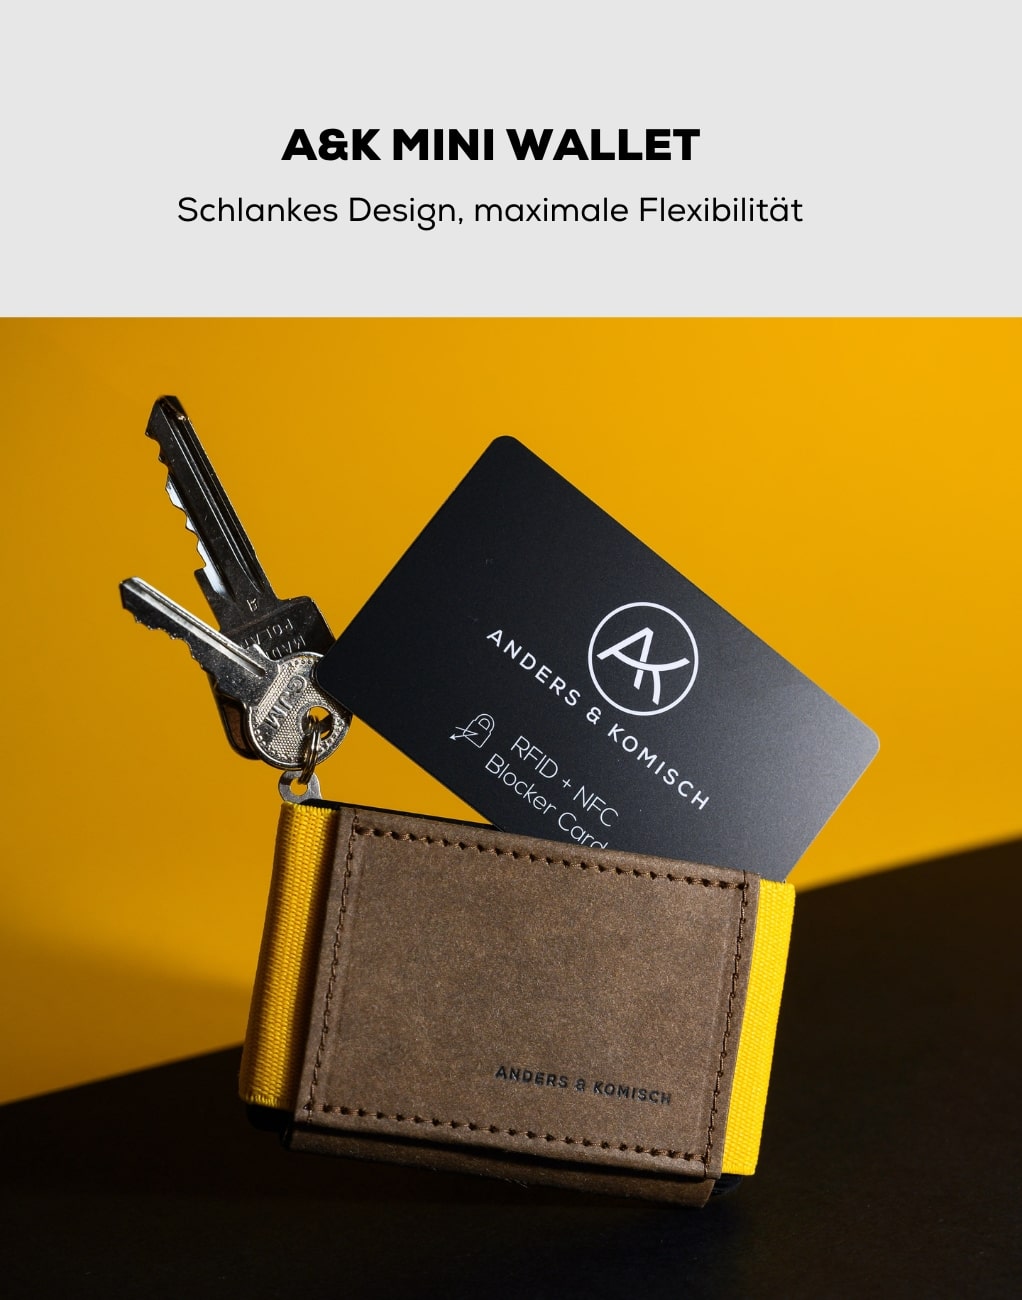 Schlüsselanhänger Schlüsselkarte - A&K MINI wallet